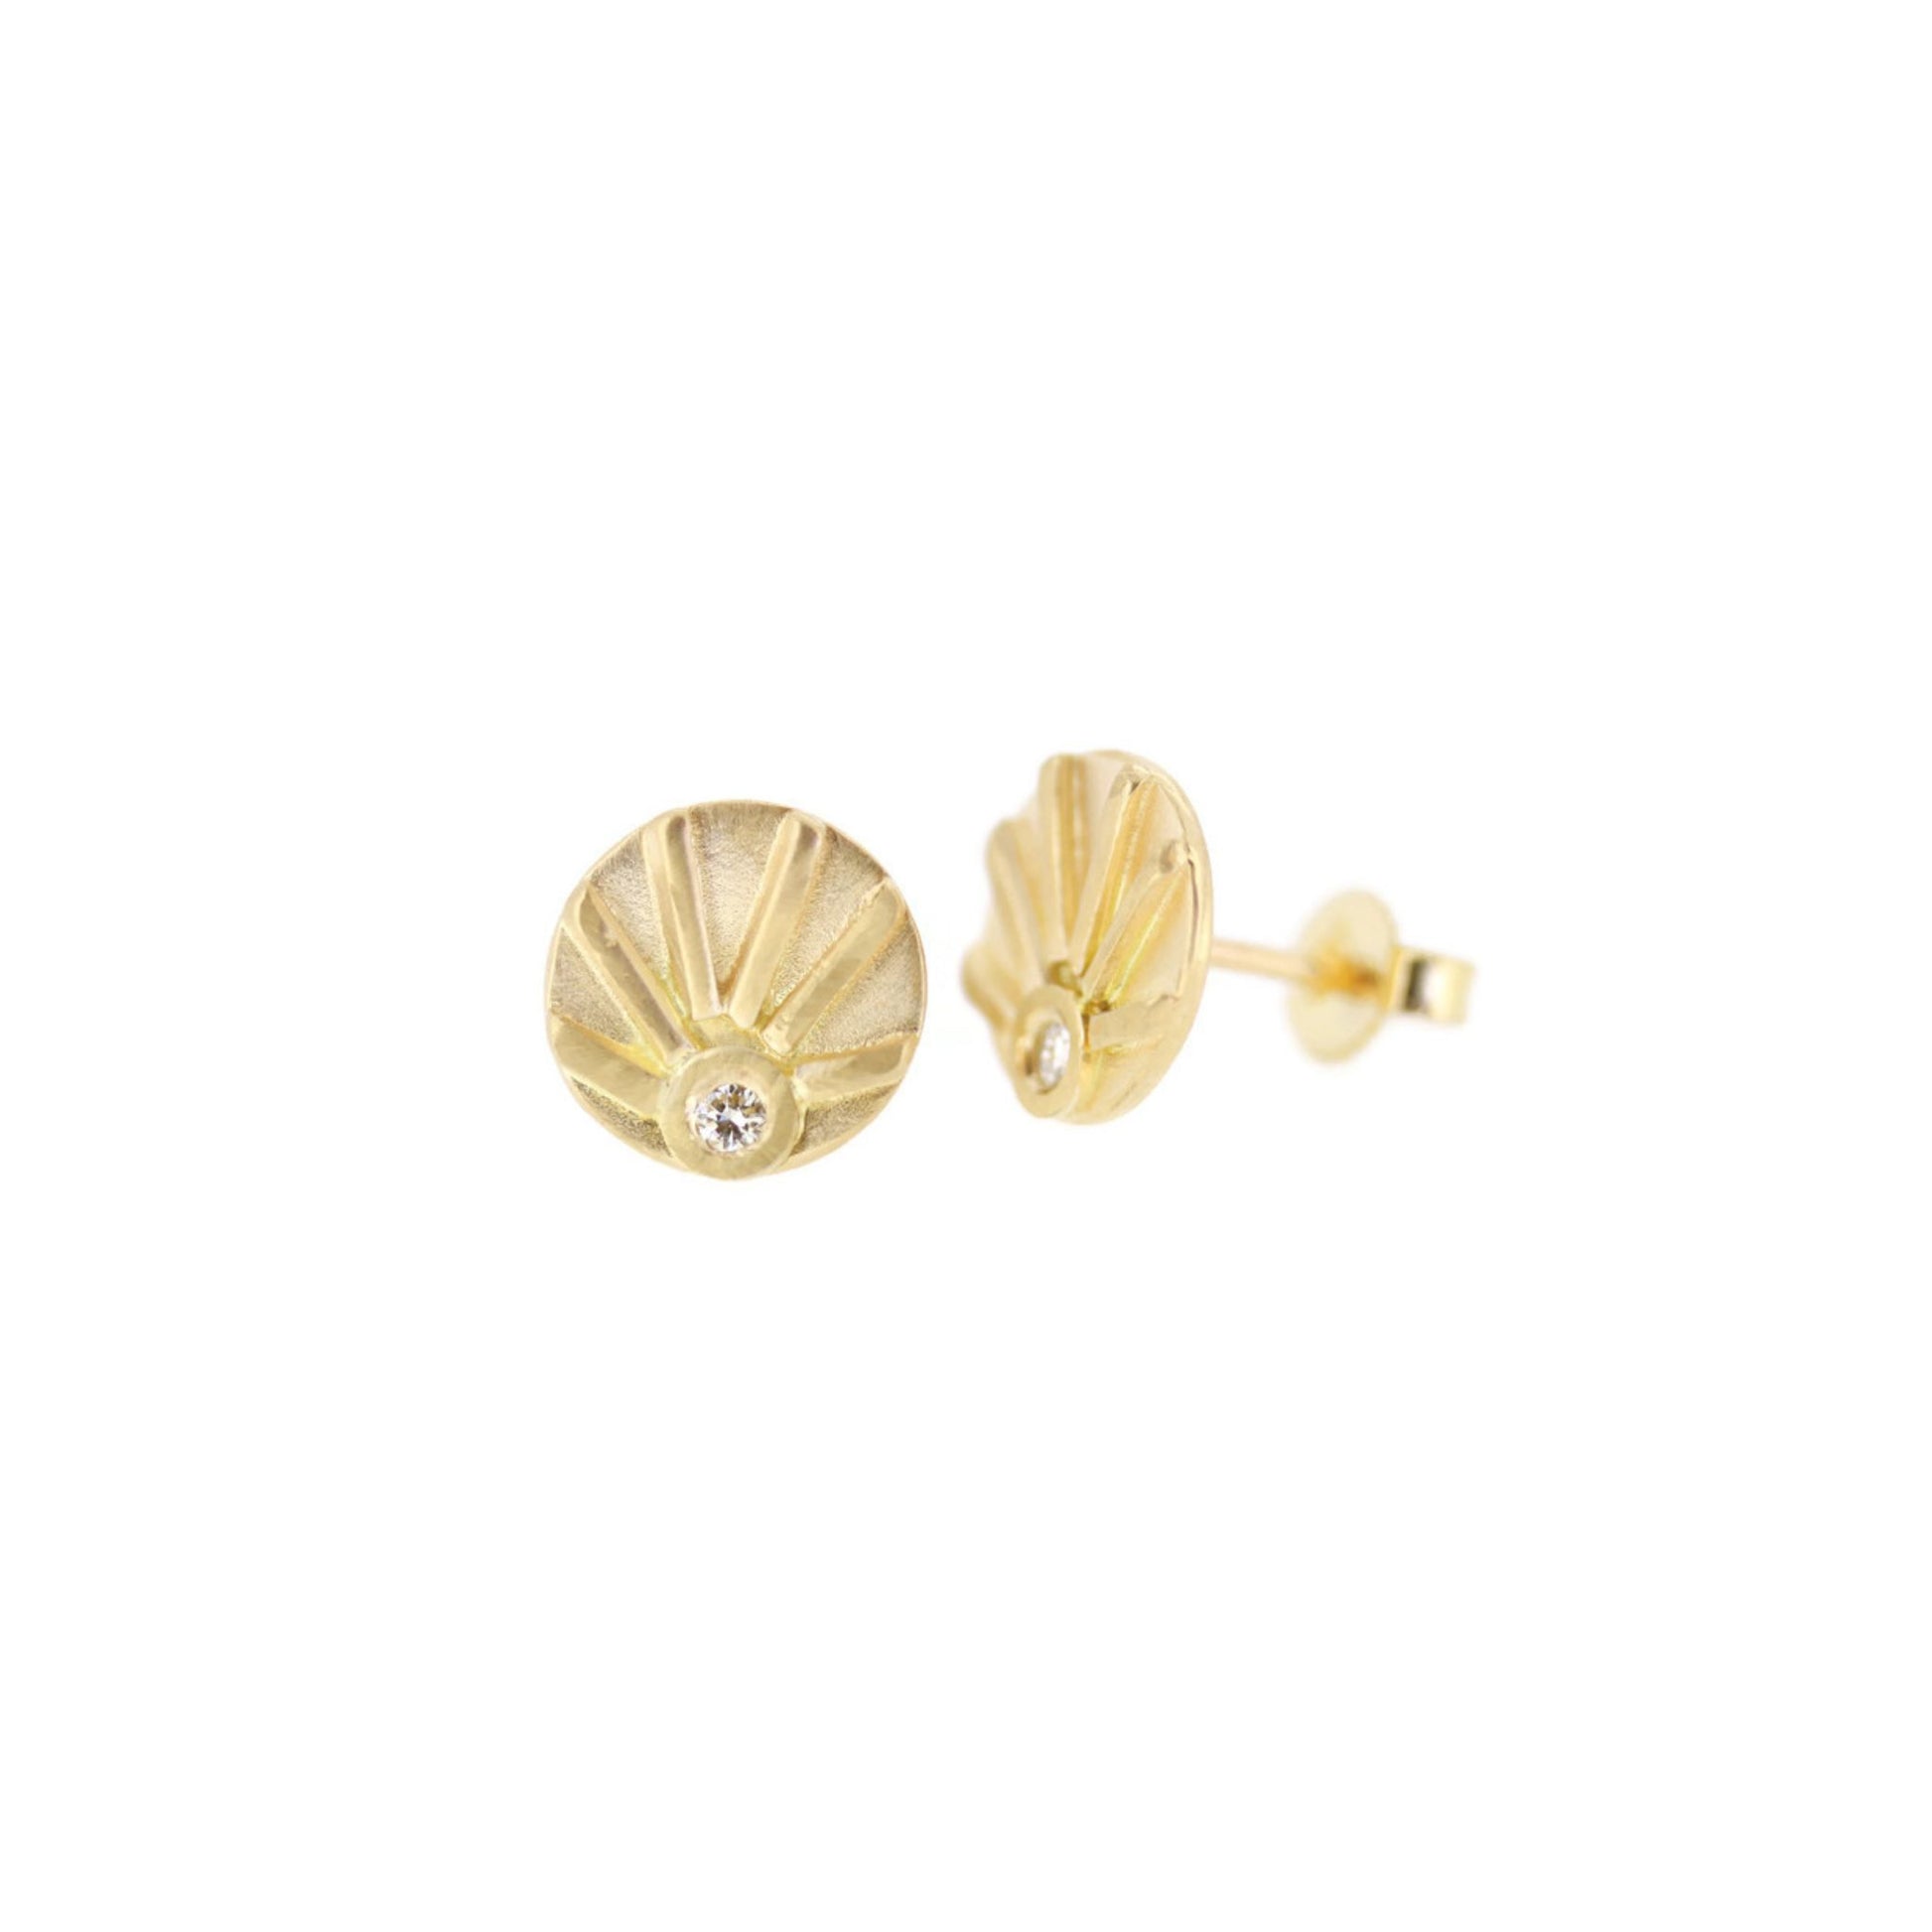 Gold and Diamond sun stud earrings by Jen Lesea